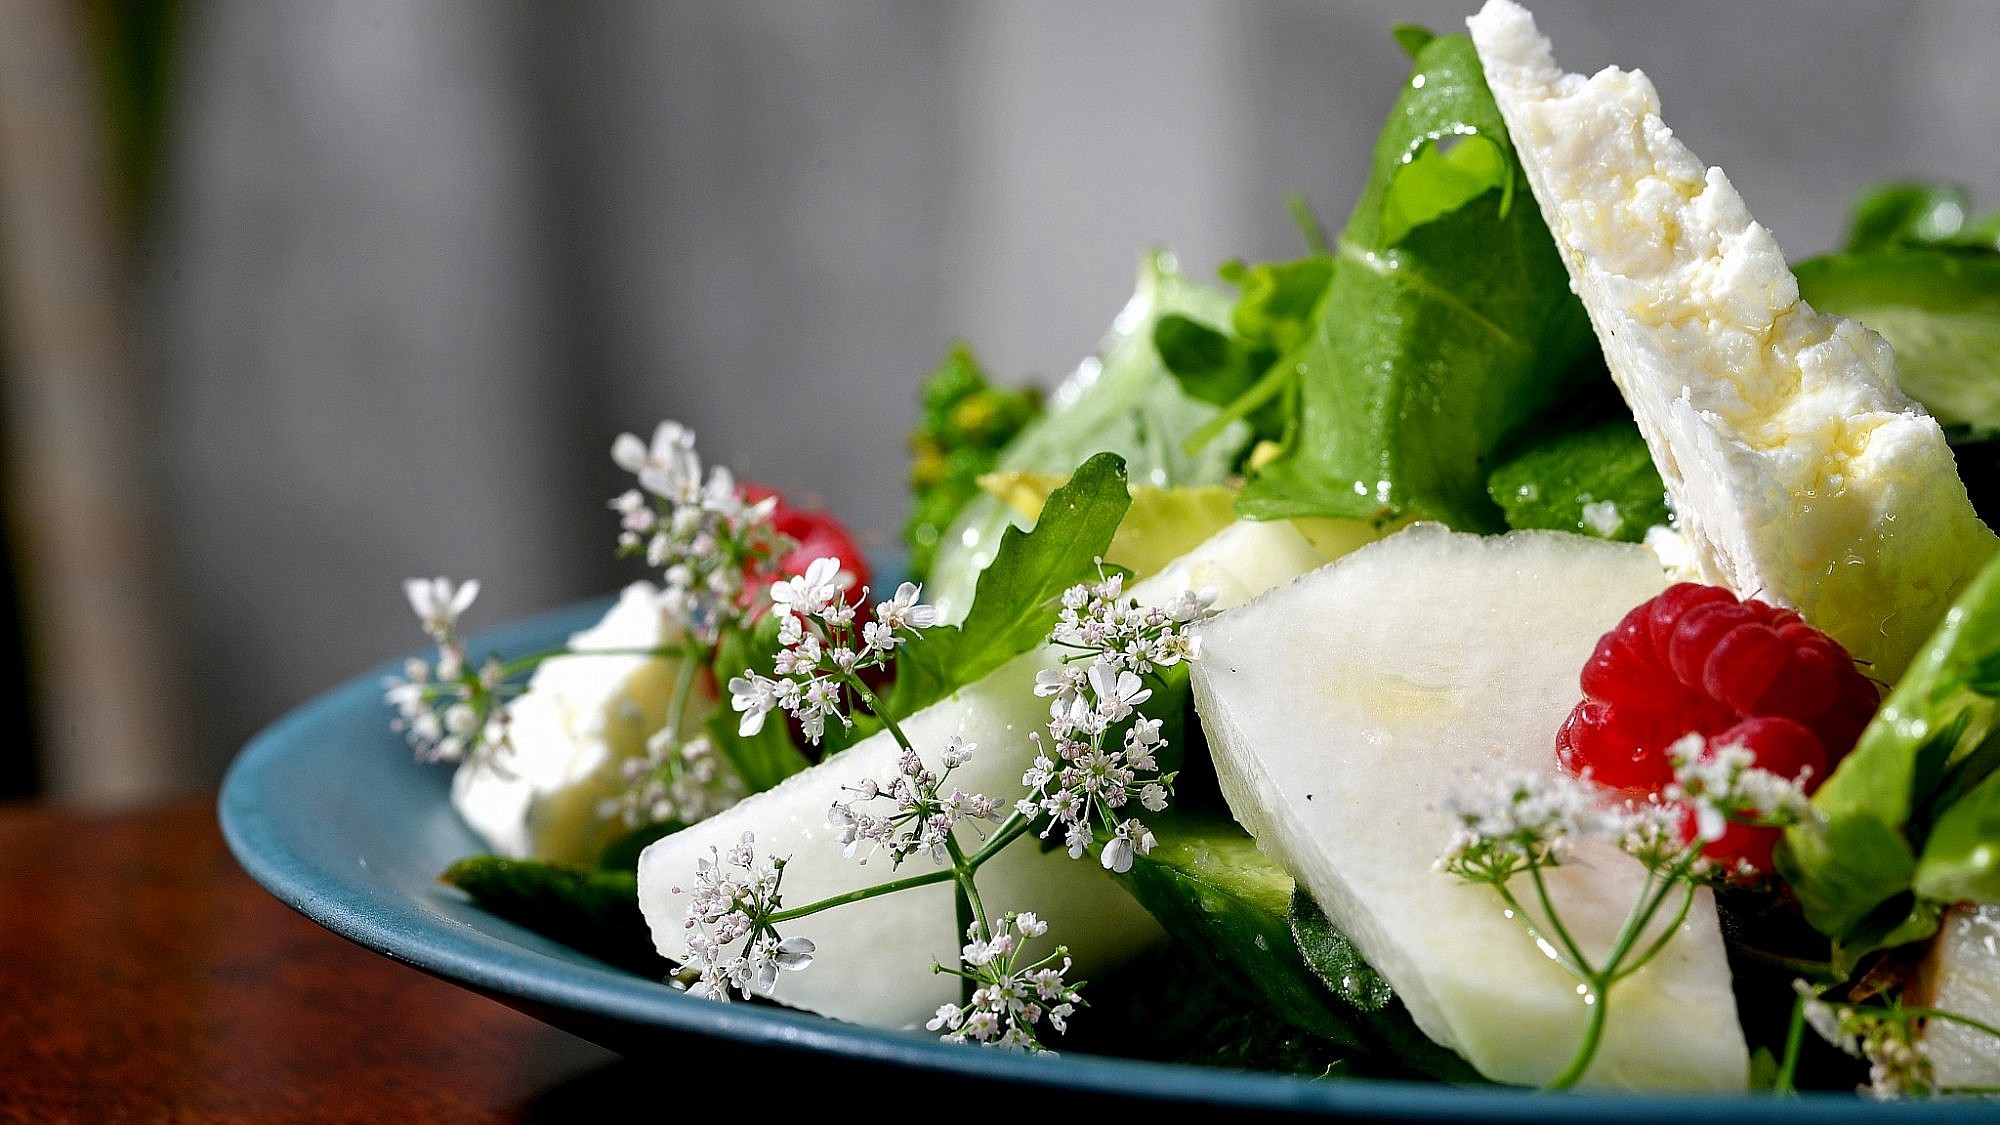 סלט קיץ ירוק של שף מושיקו גמליאלי. צילום: רן בירן